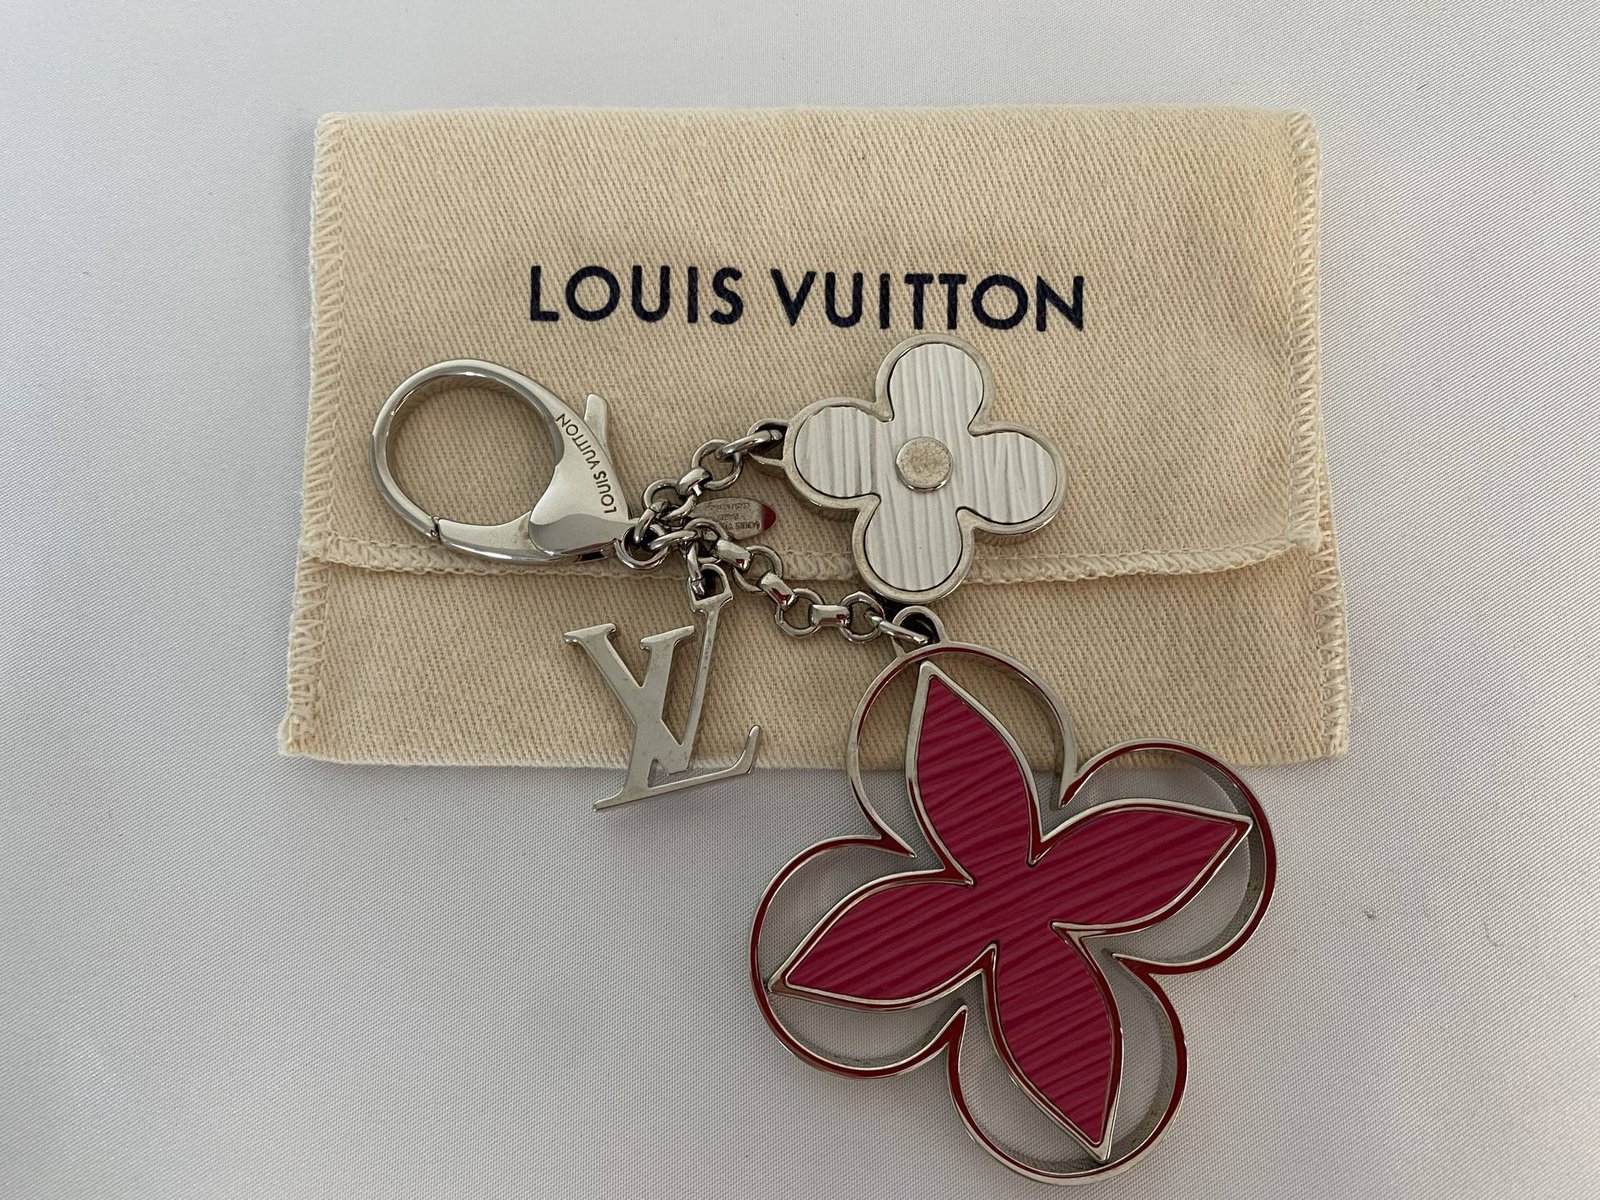 Louis Vuitton lanyard key holder - MaBelleSac